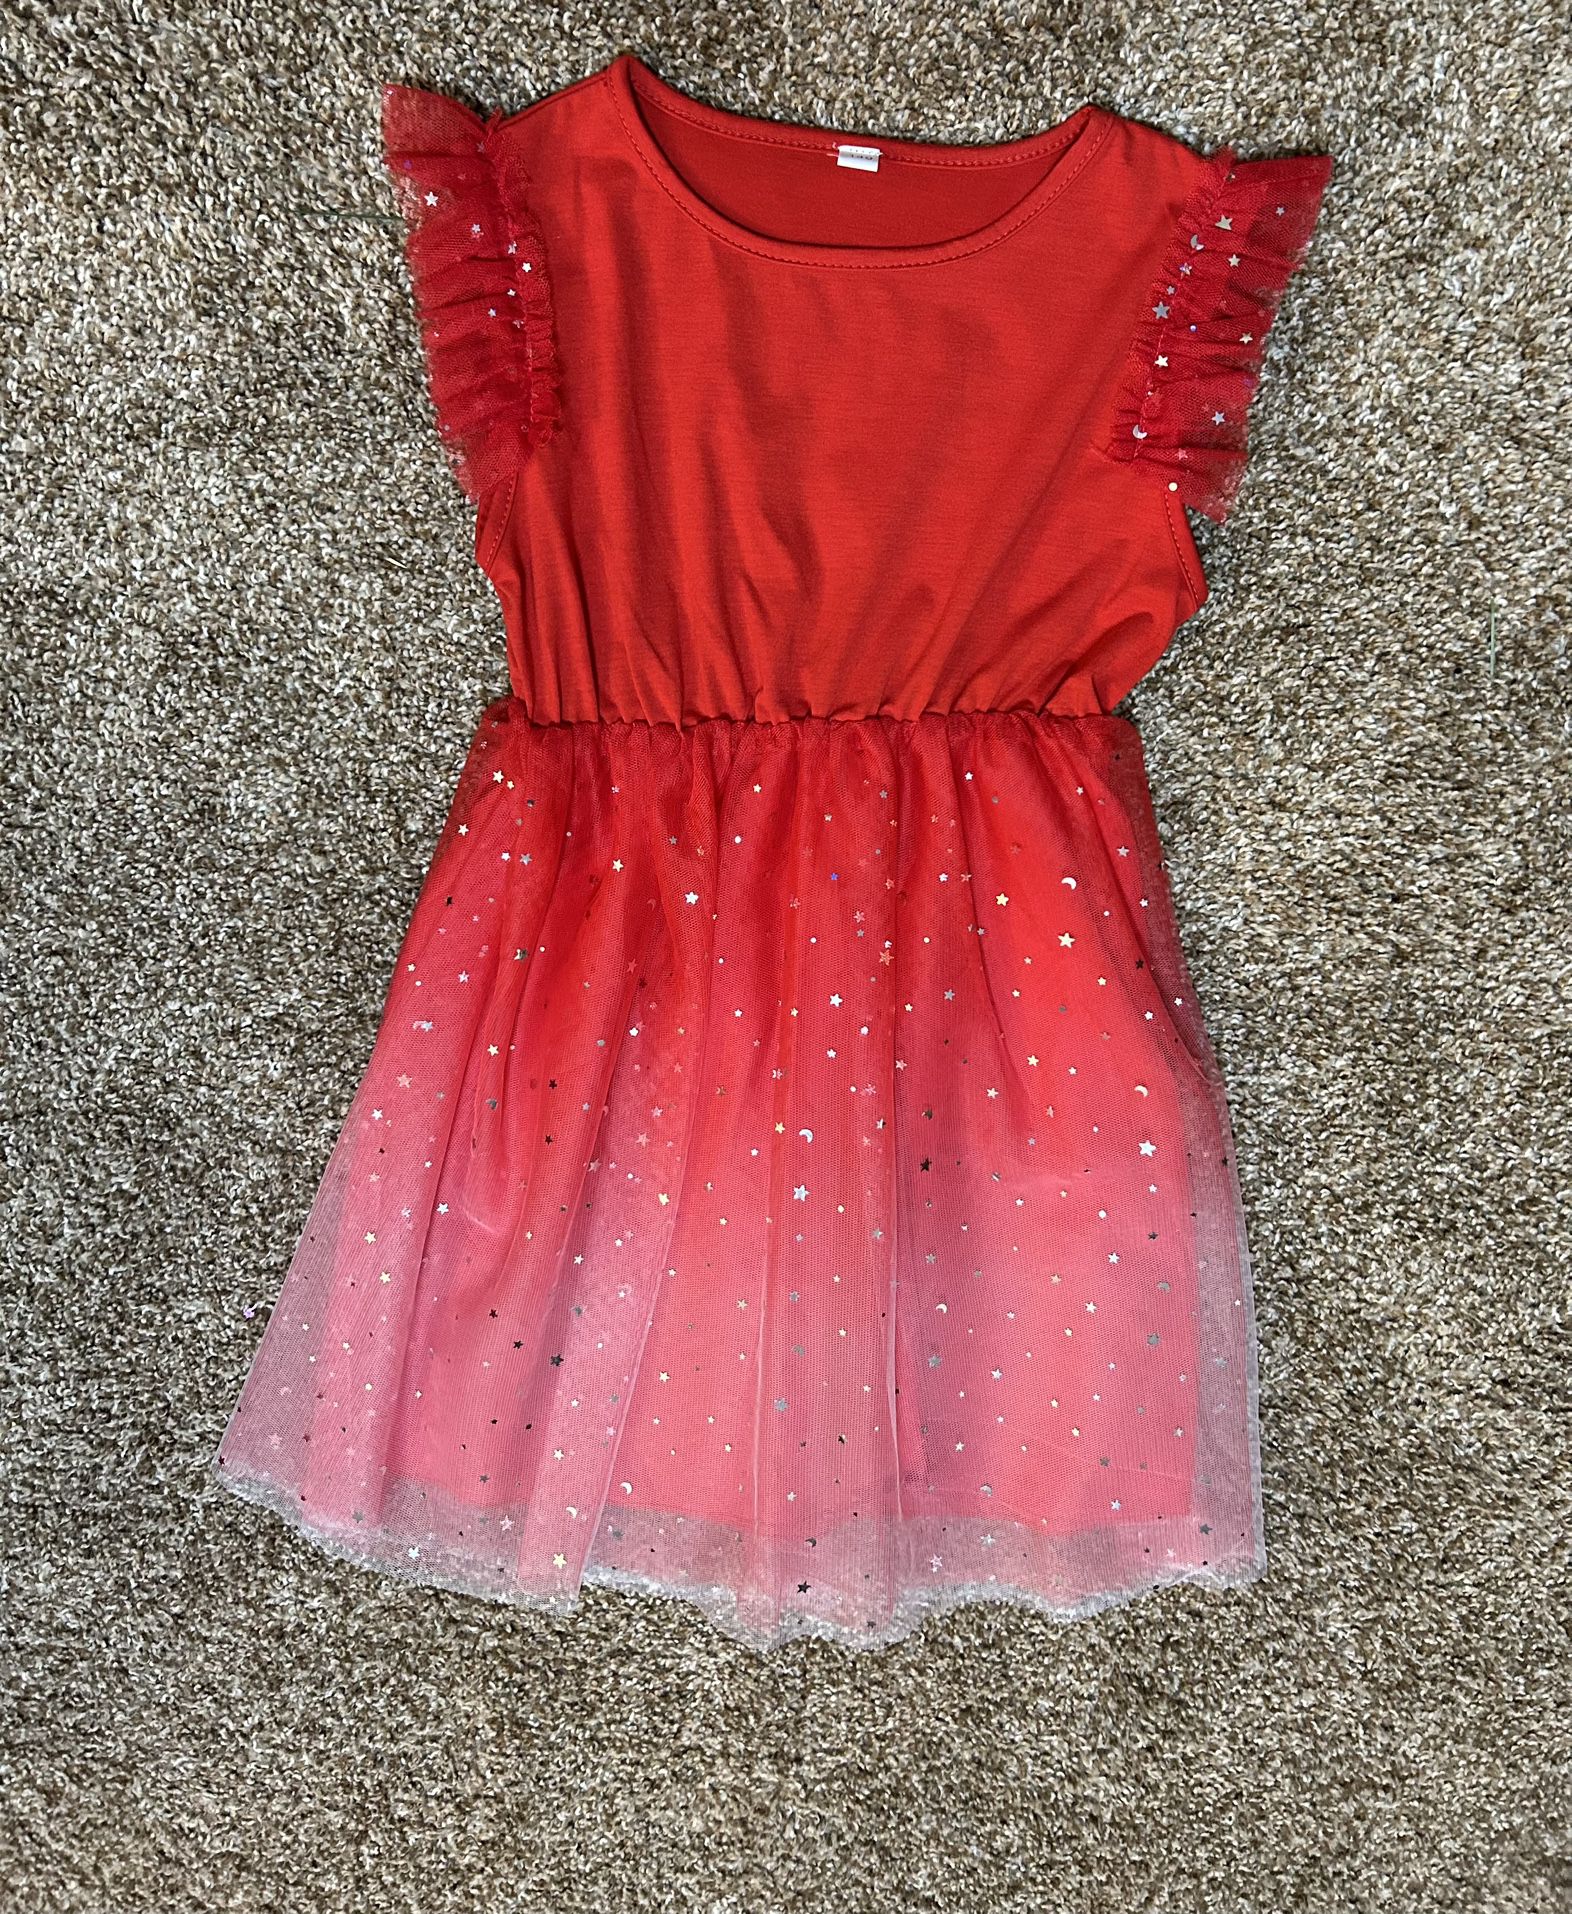 Girls beautiful Red Dress, size 10/12